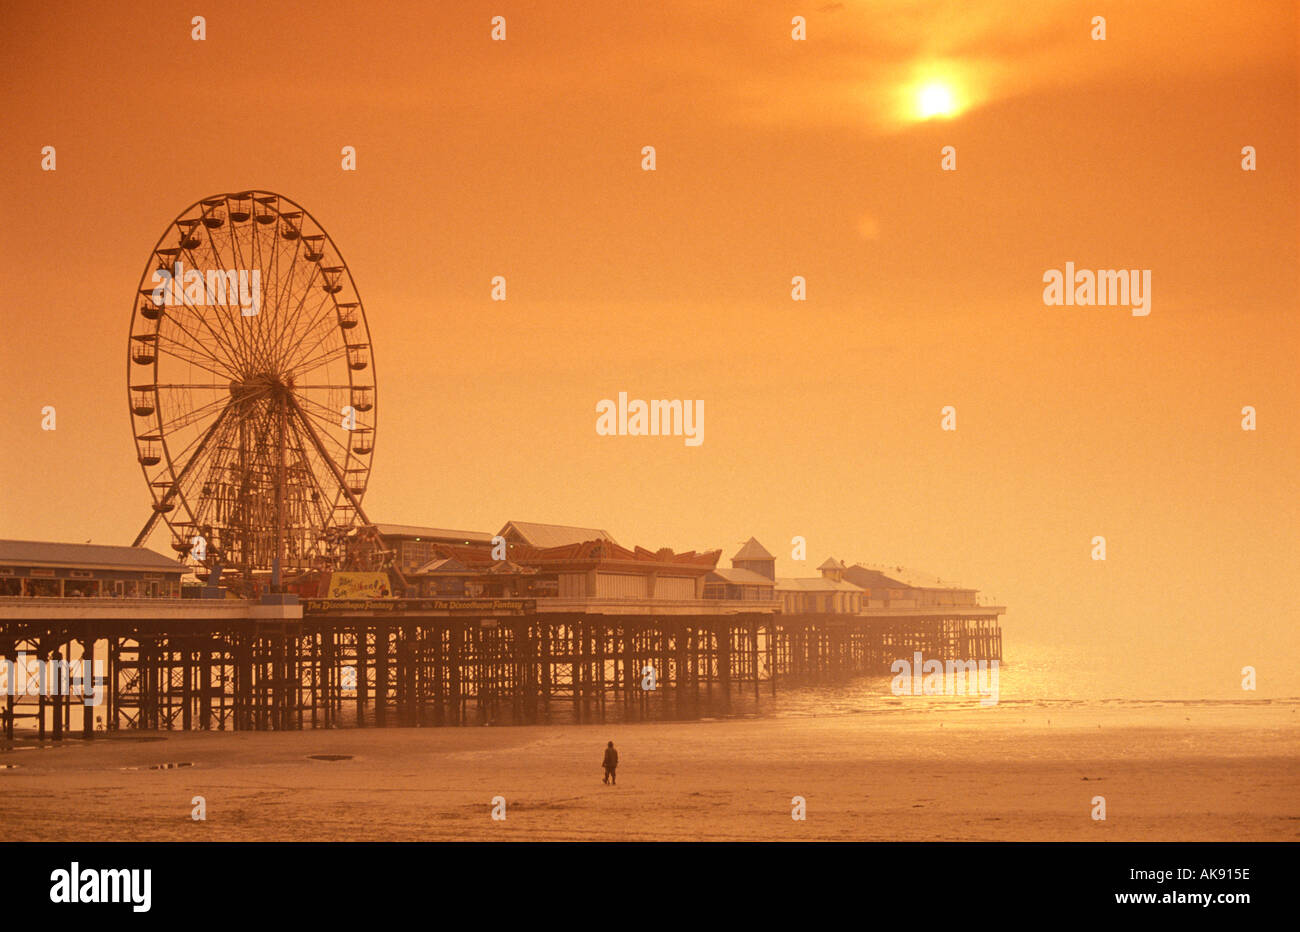 Central Pier plage de Blackpool Lancashire England uk Banque D'Images